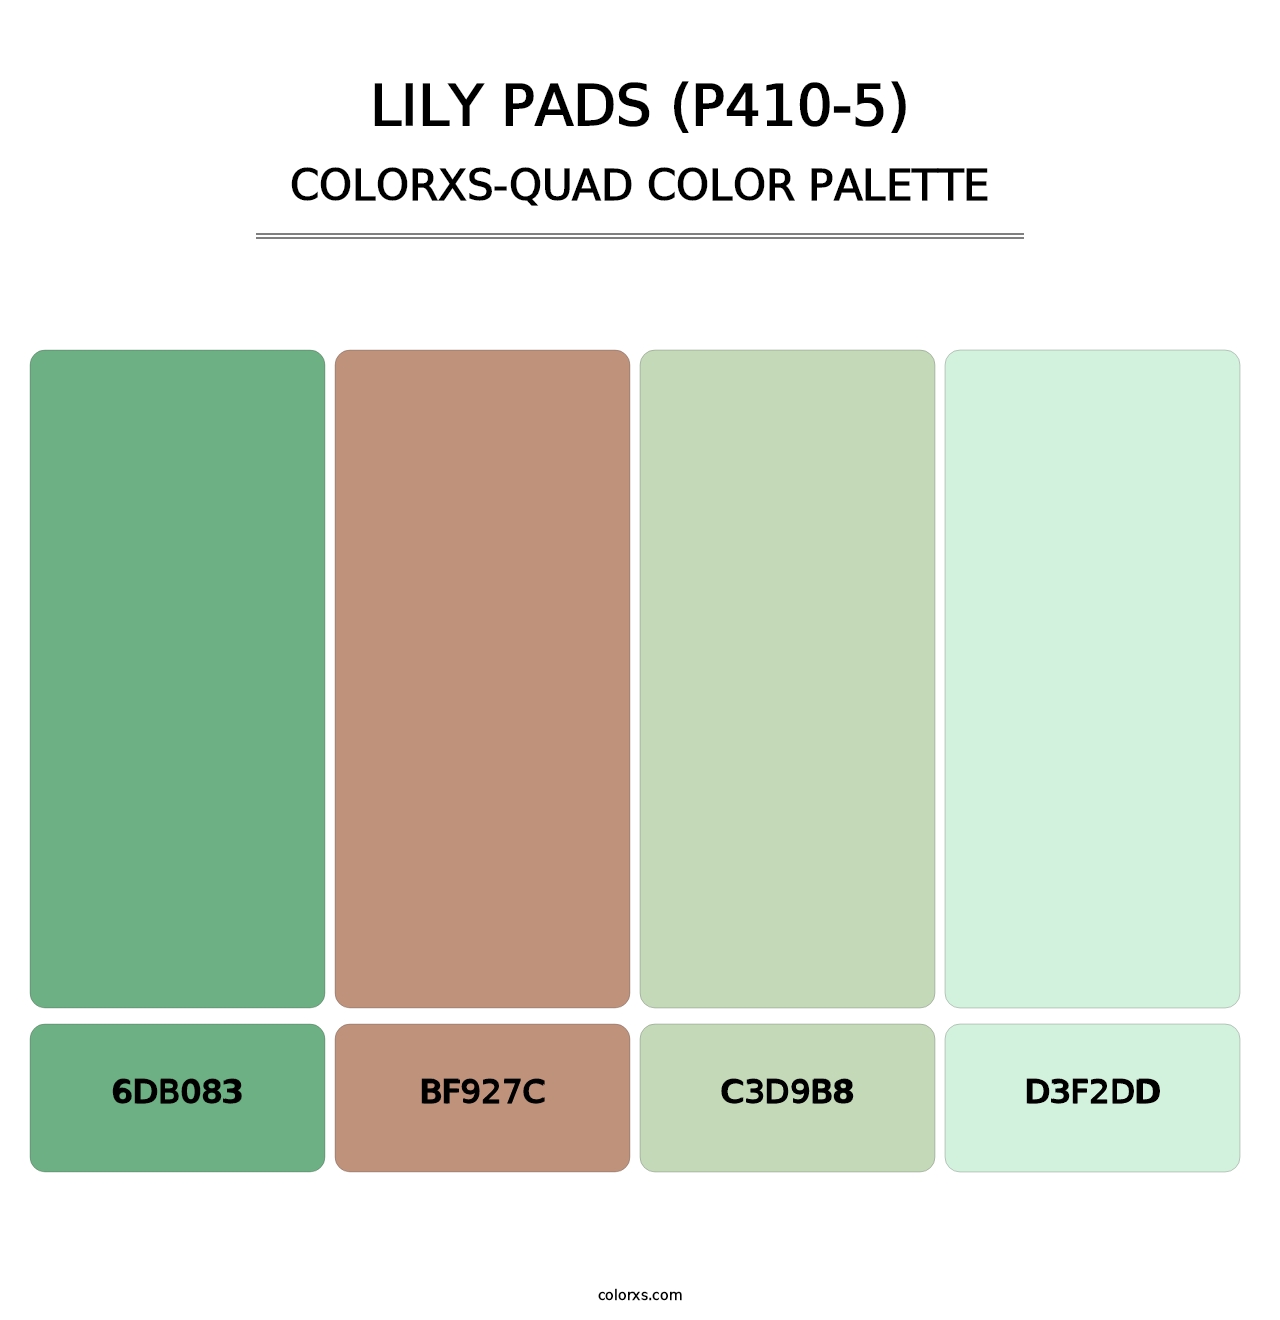 Lily Pads (P410-5) - Colorxs Quad Palette